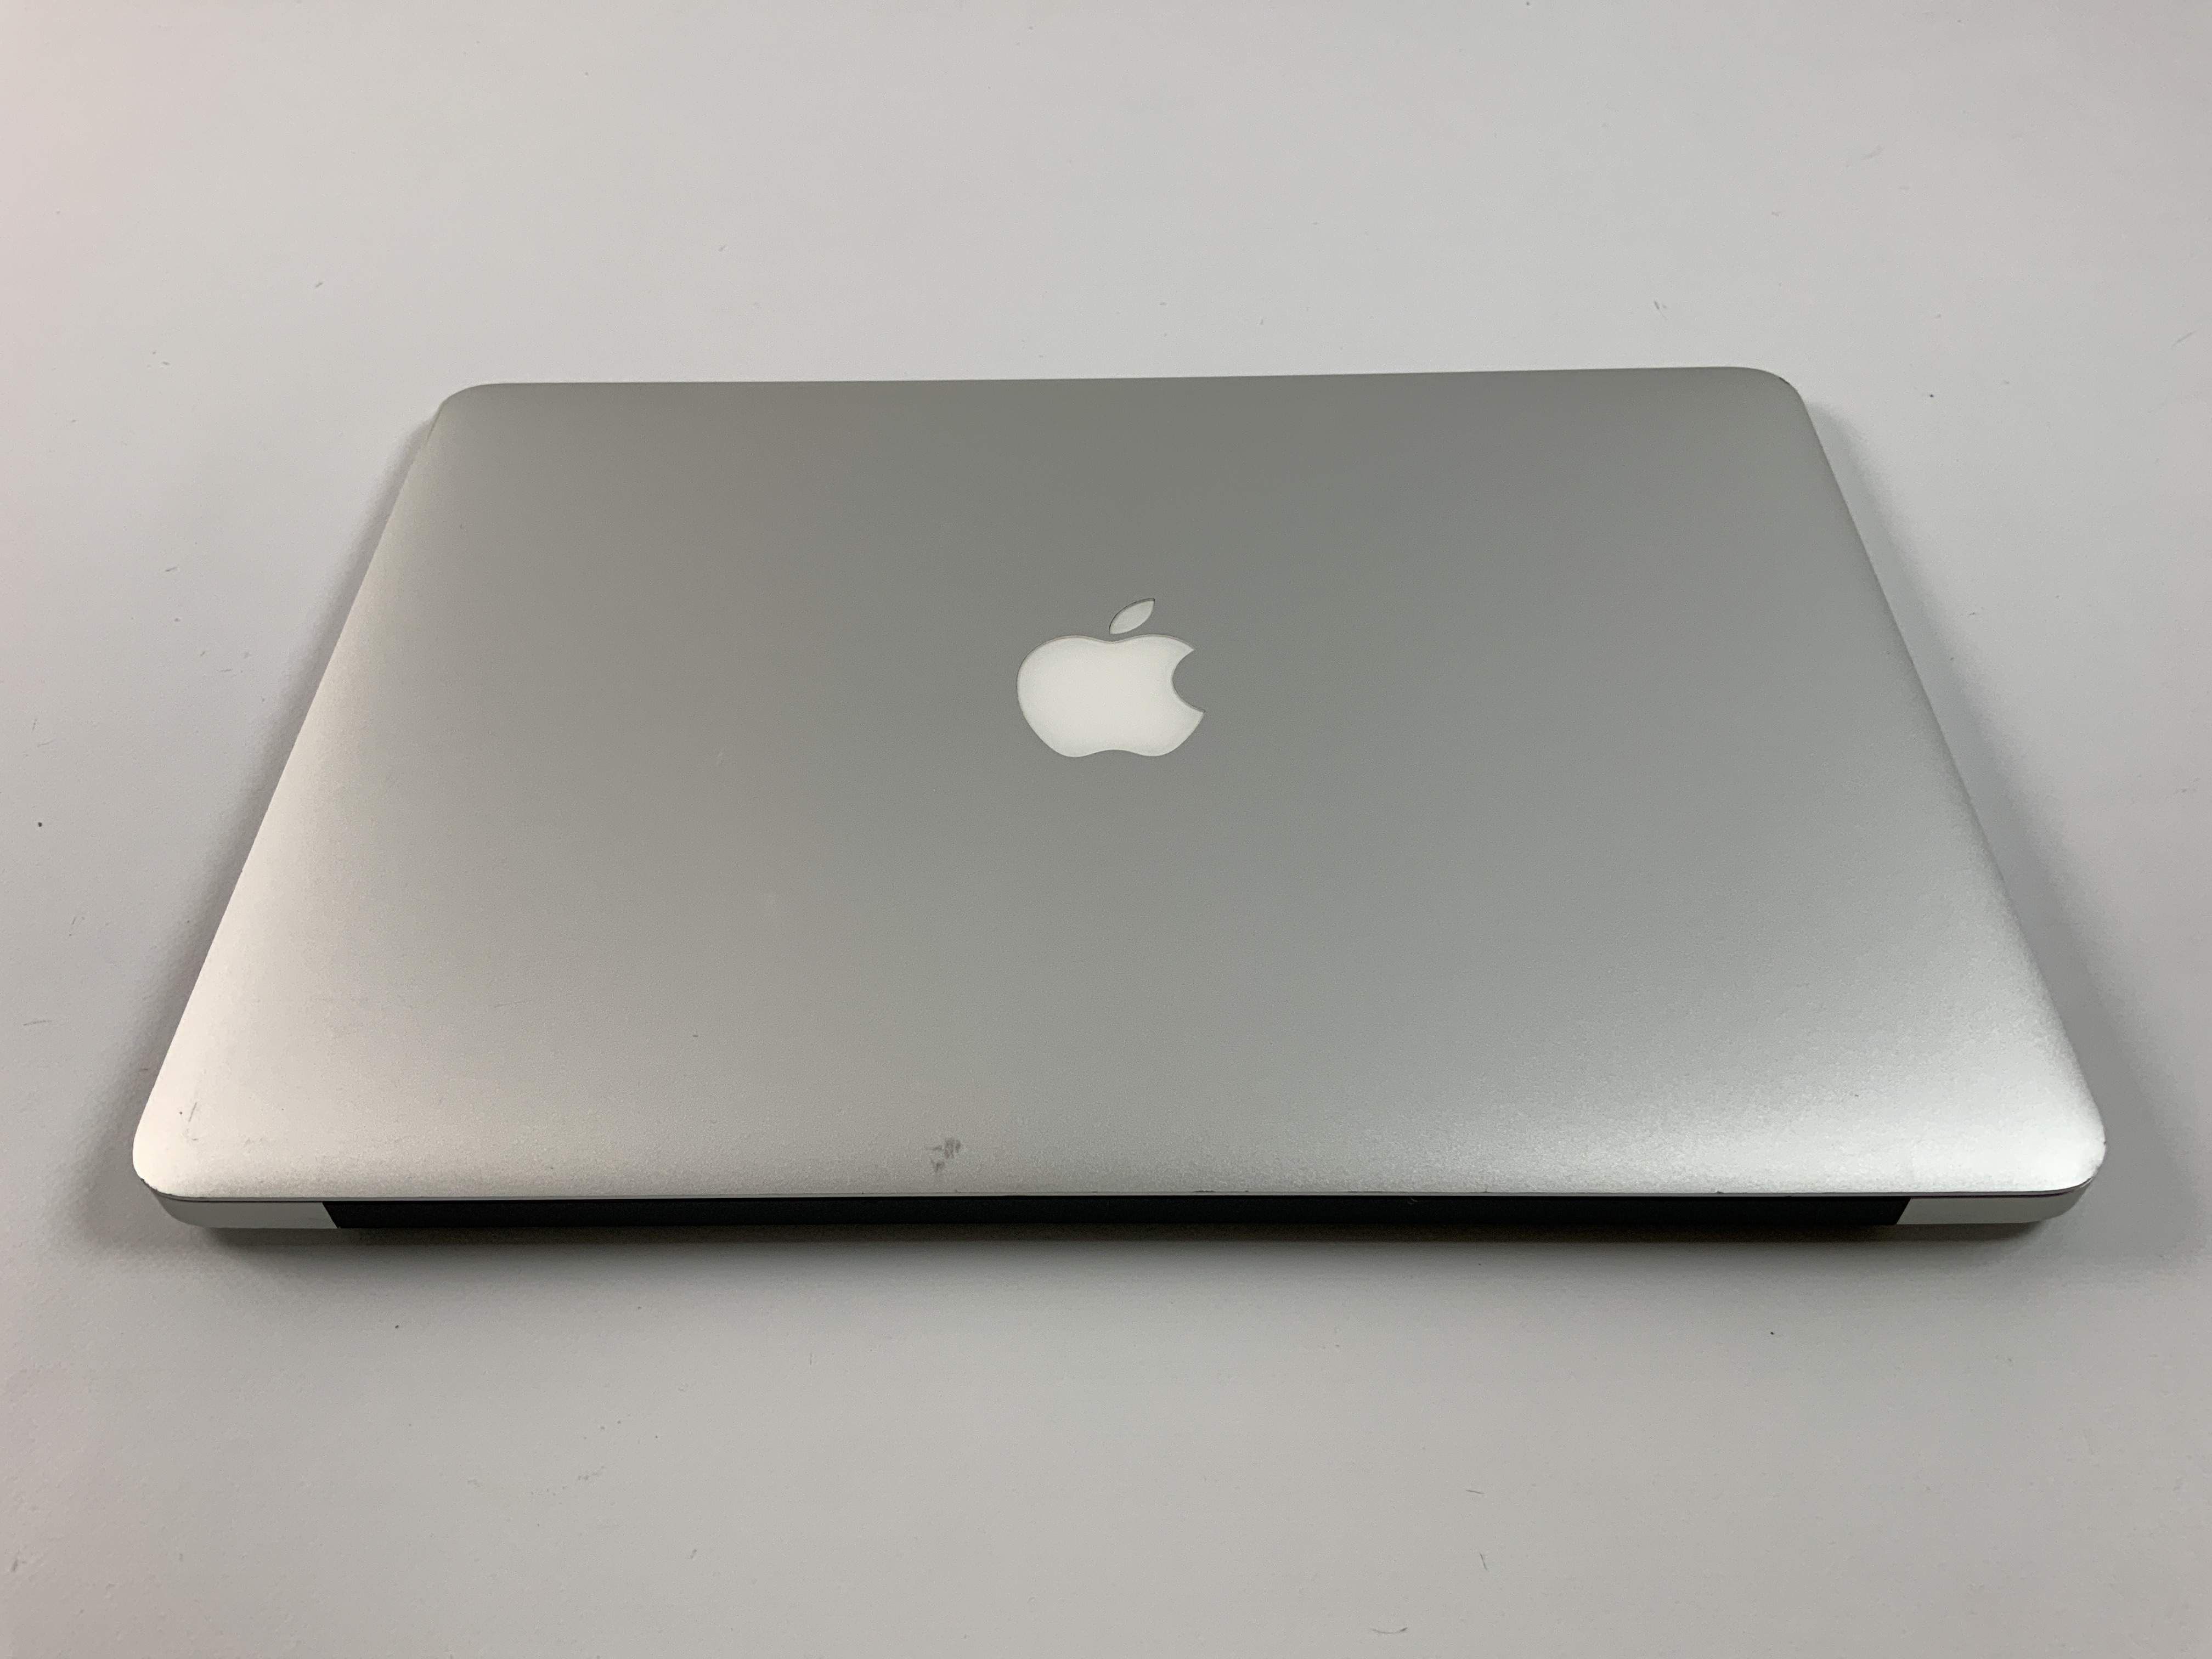 MacBook Air 13" Mid 2017 (Intel Core i5 1.8 GHz 8 GB RAM 256 GB SSD), Intel Core i5 1.8 GHz, 8 GB RAM, 256 GB SSD, Bild 2